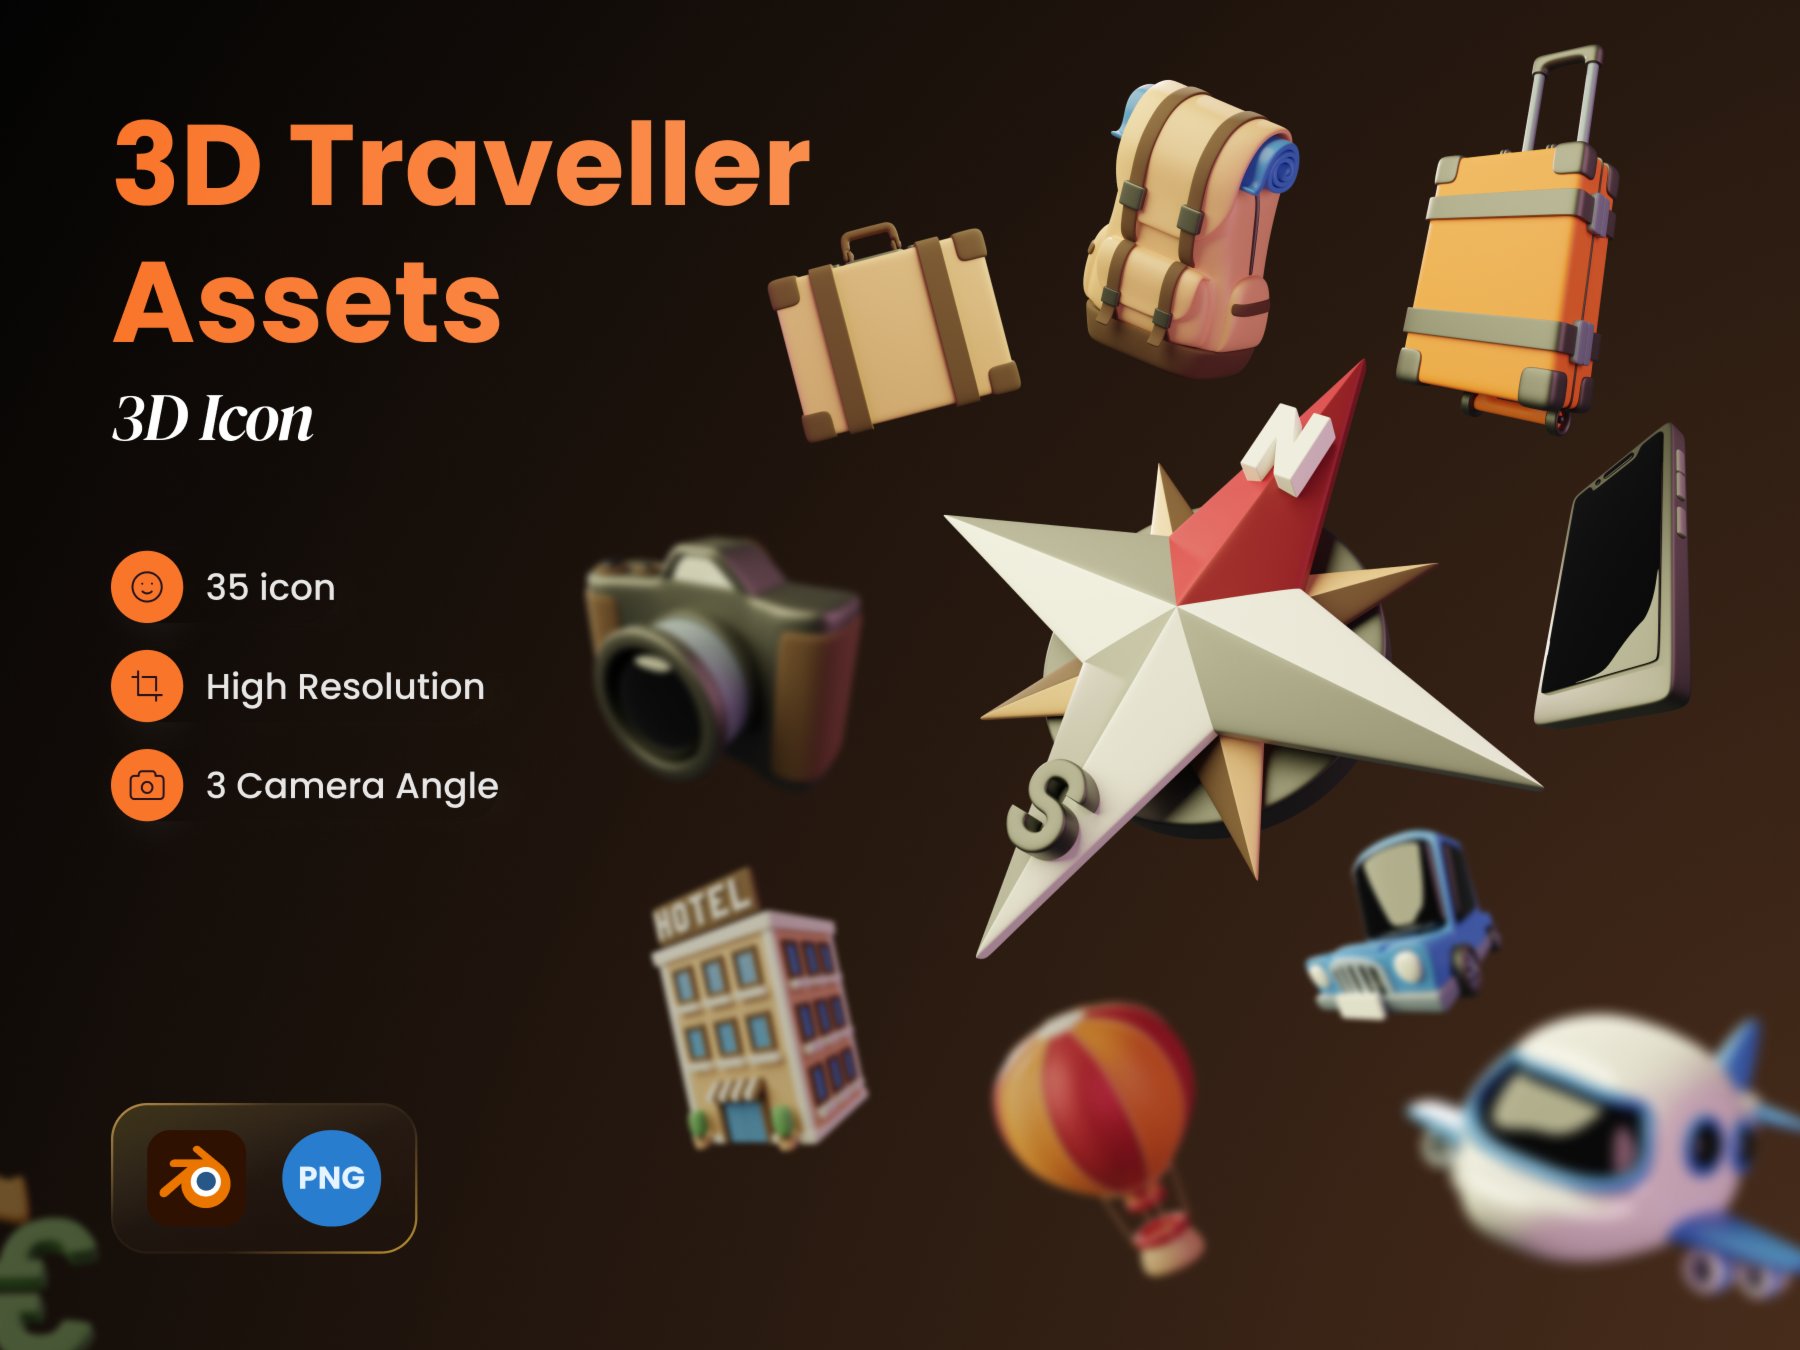 35款旅行3D模型图标素材 3D Traveller Assets .blender .fig素材